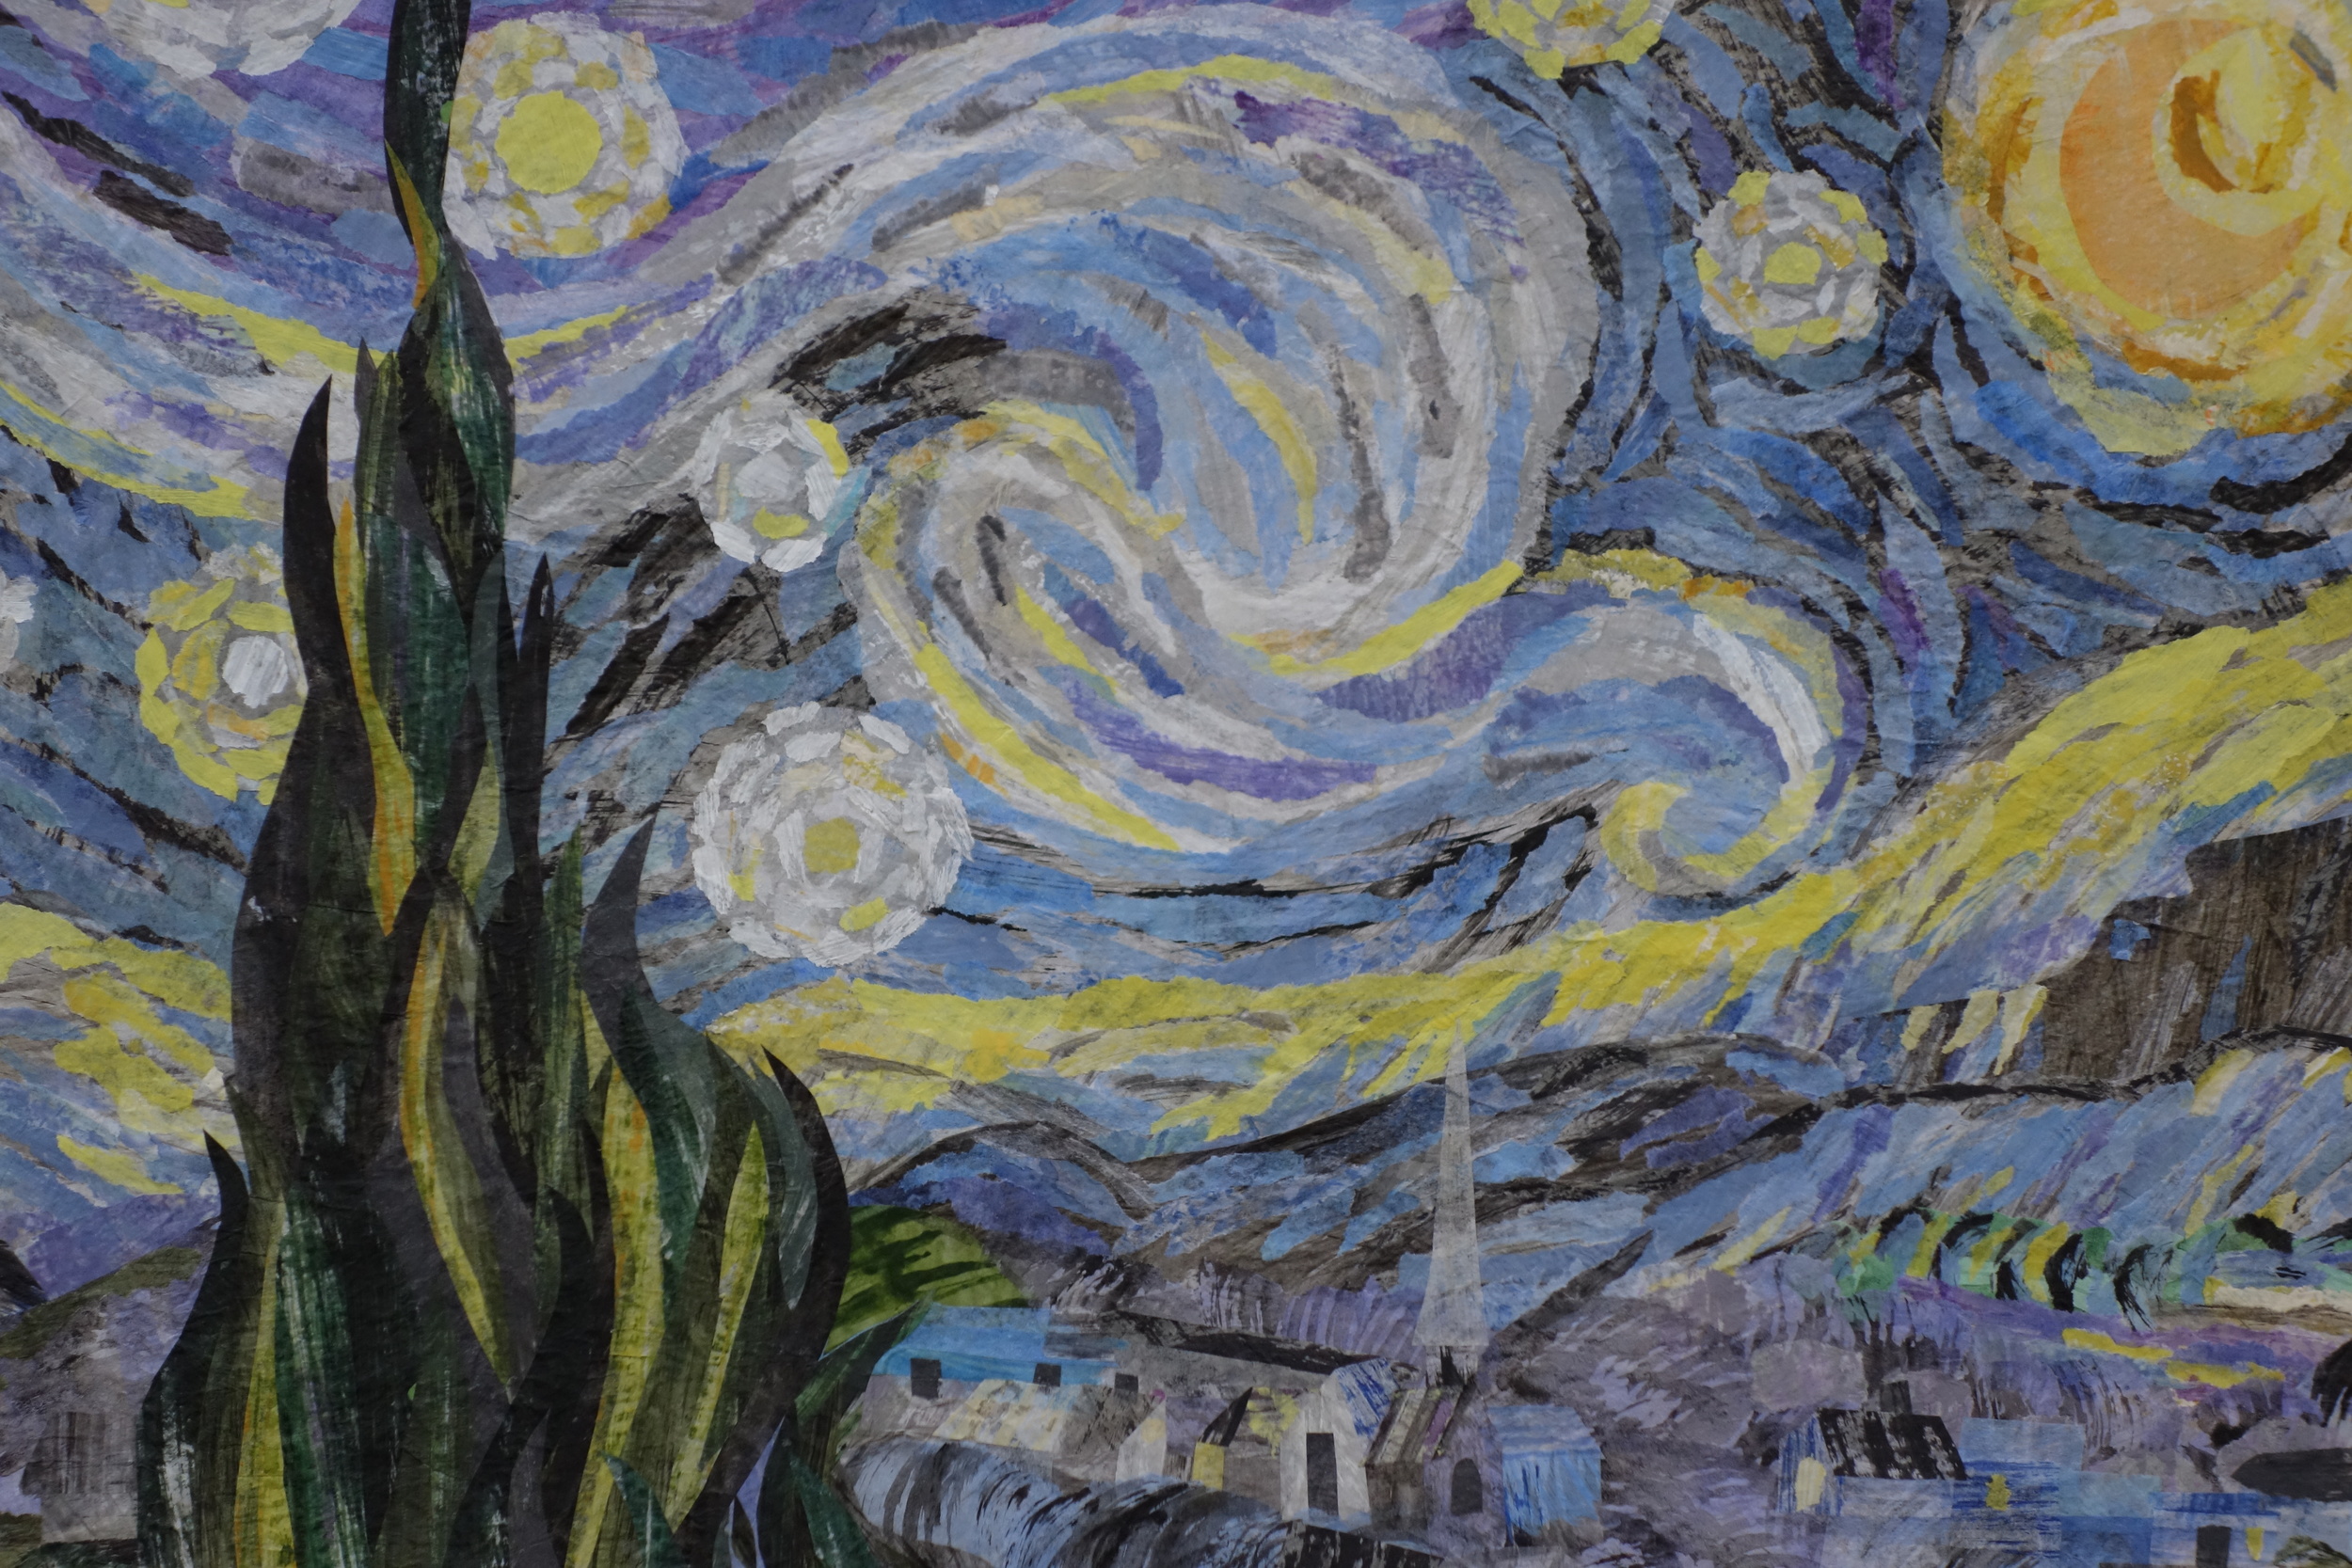 Tribute to Van Gogh - Starry Night